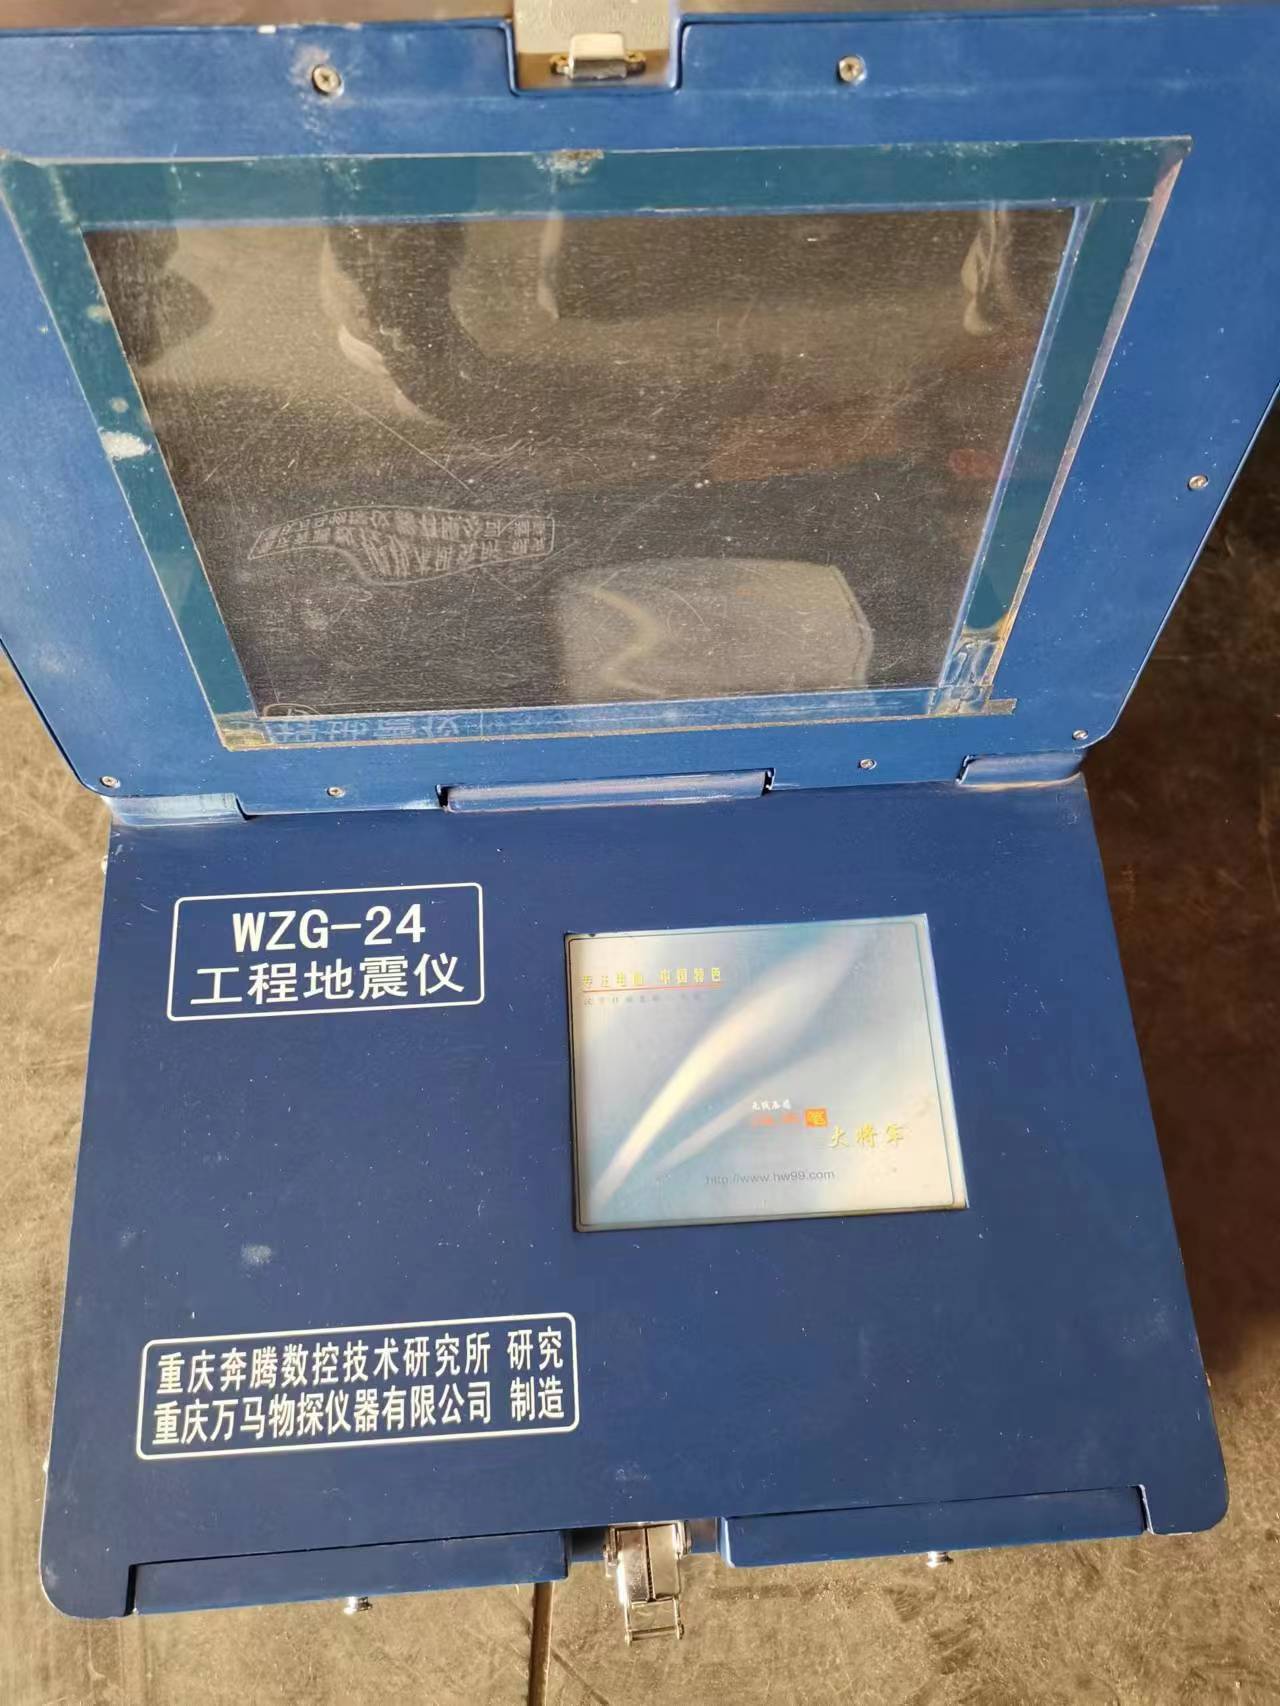 宁夏回族自治区地球物理地球化学调查院（自治区深地探测中心）2台报废仪器处置项目出售招标